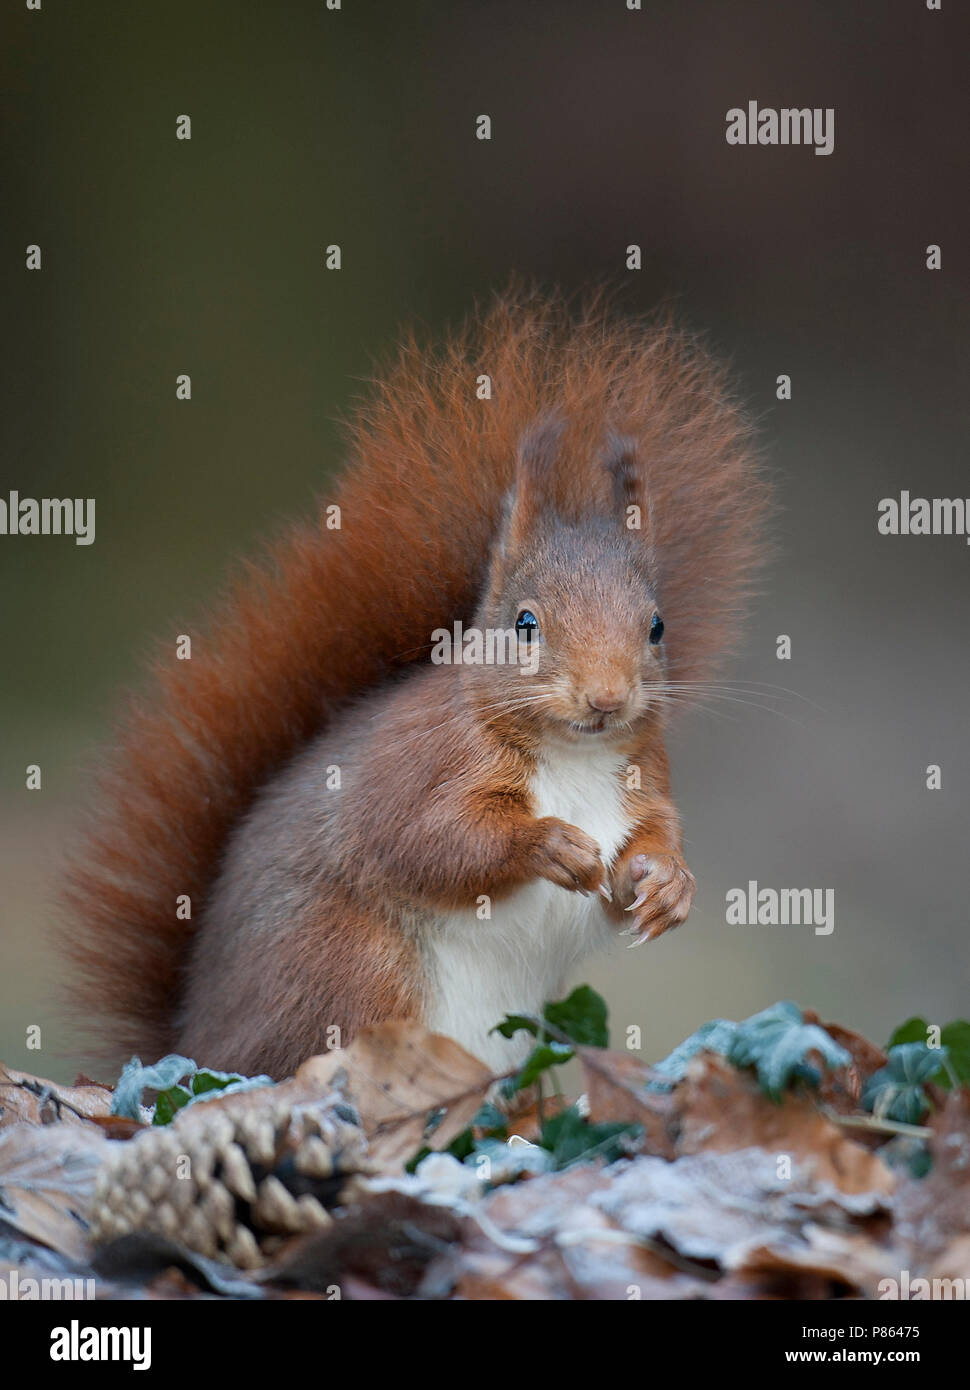 Eekhoorn op de bosbodem; Red Squirrel on forest floor Stock Photo